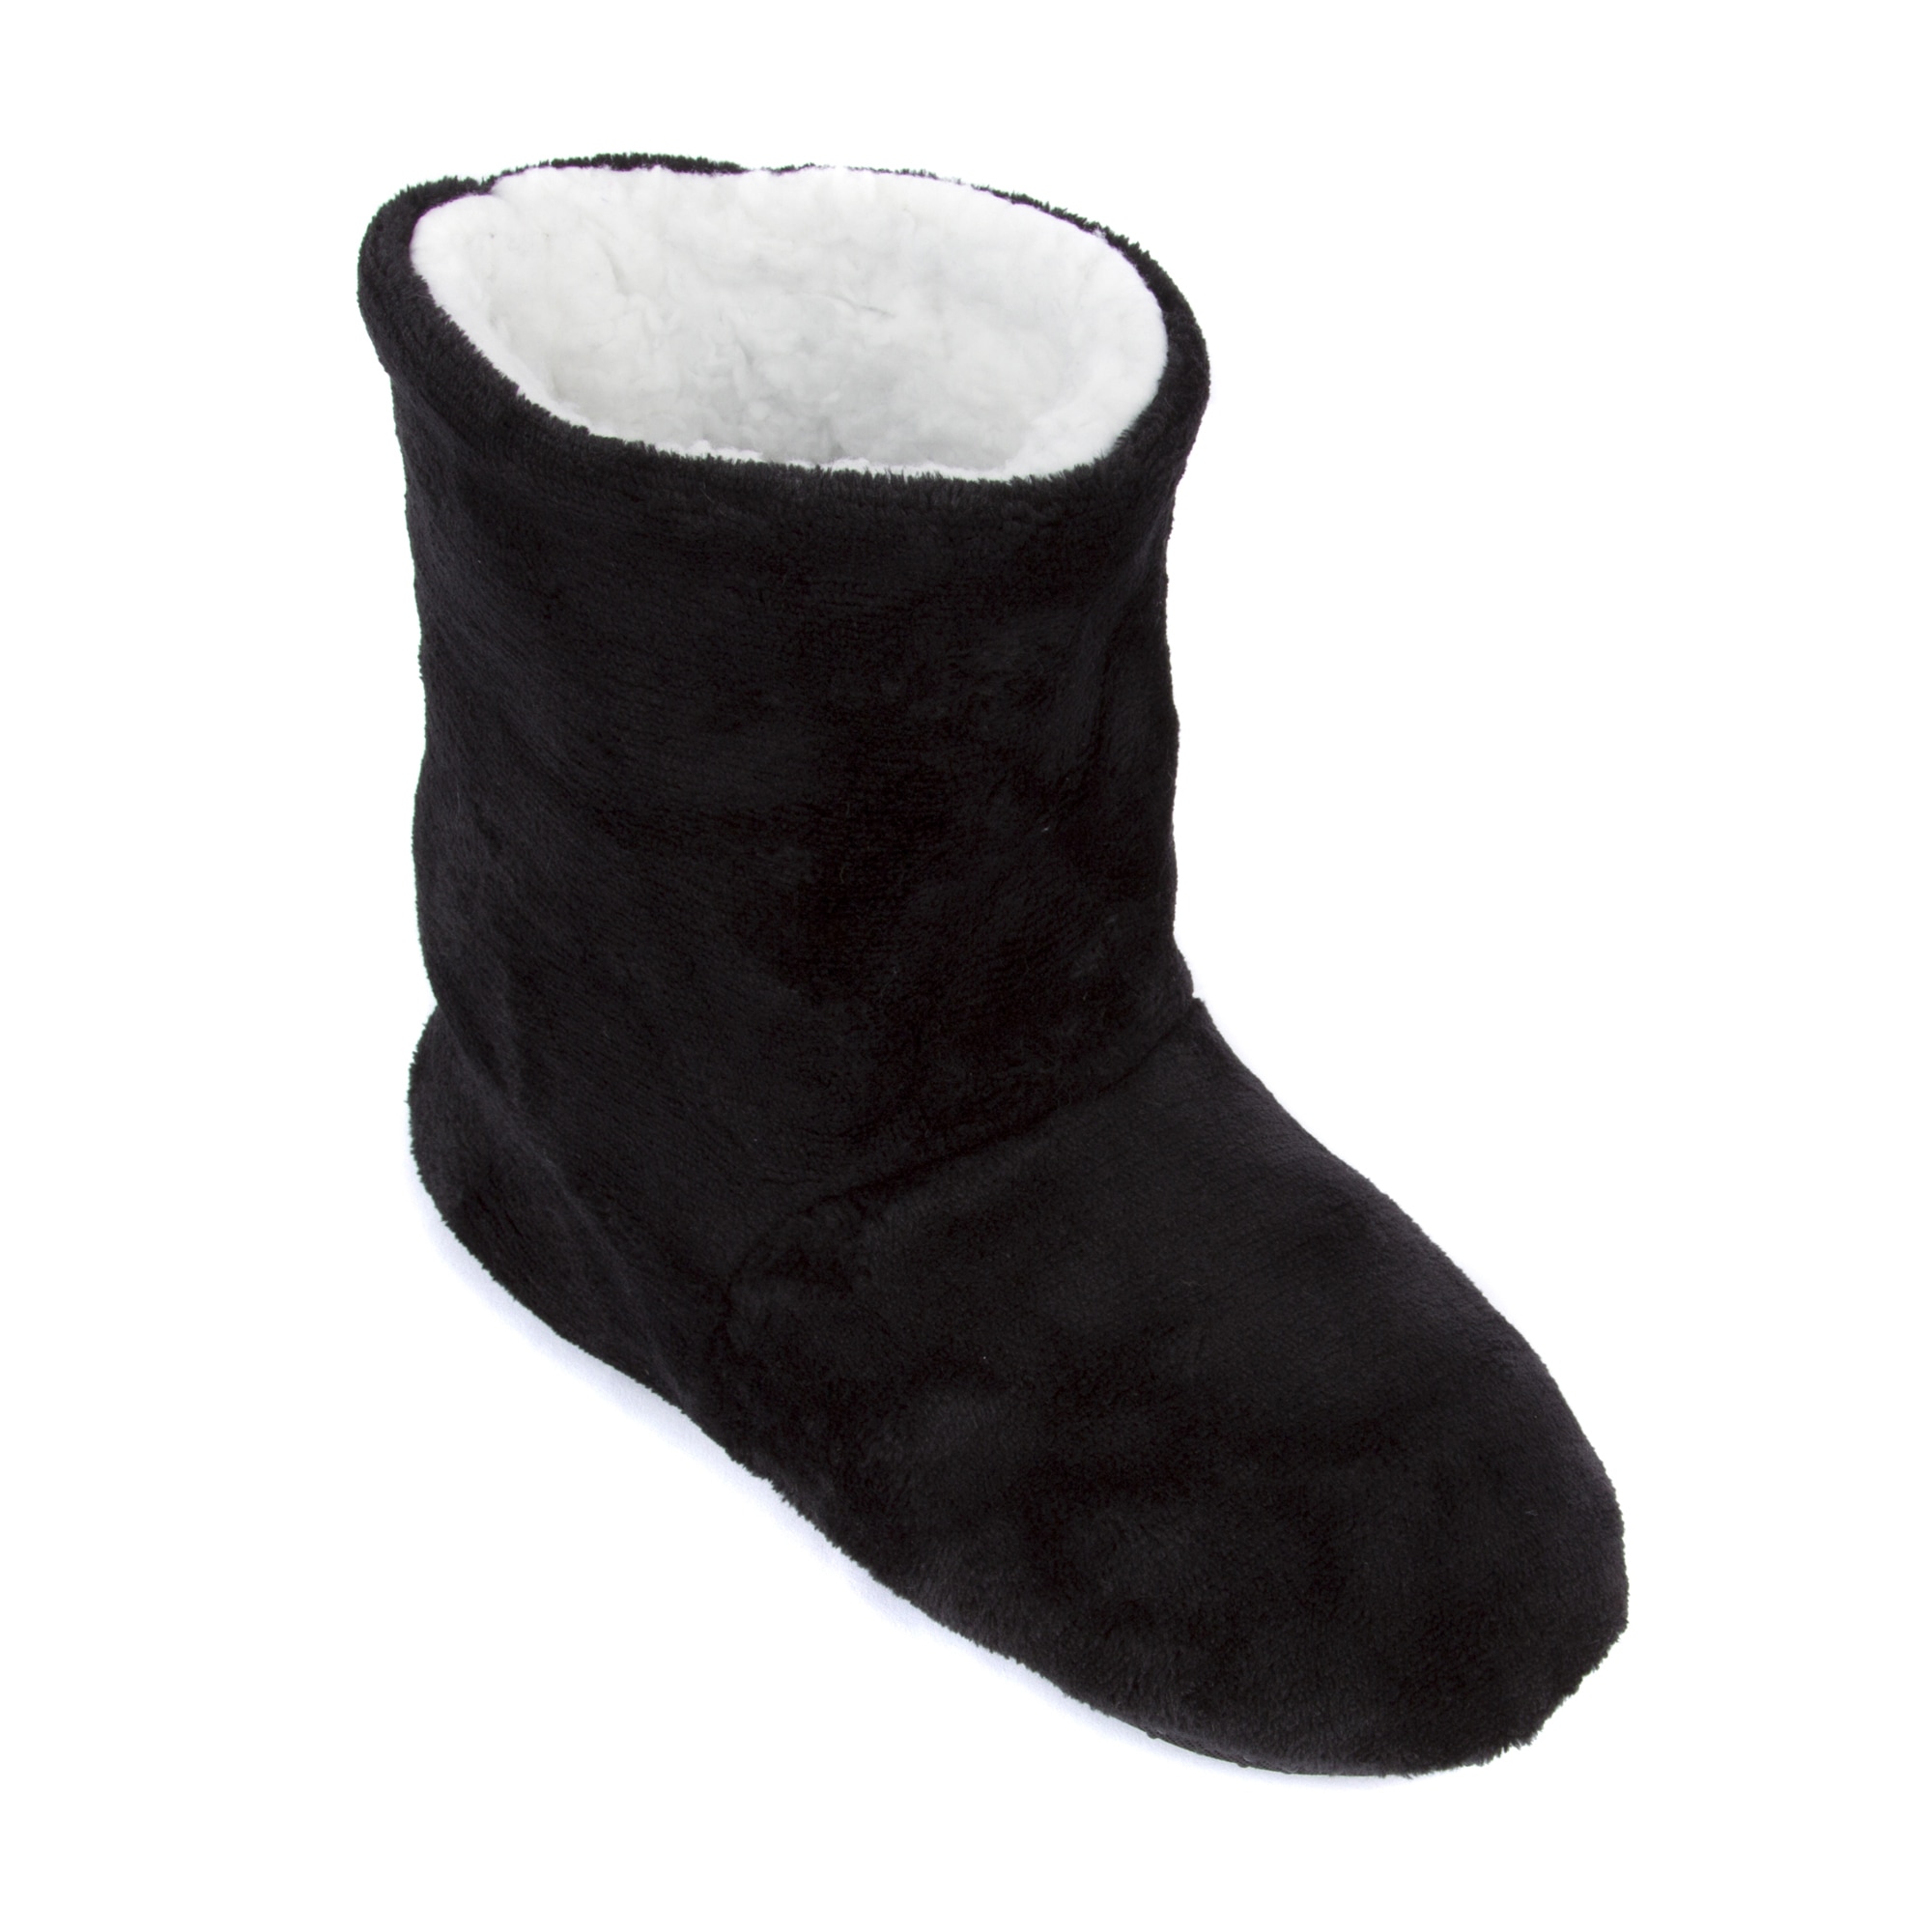 Leisureland Women #39 s Fleece Lined Slippers eBay